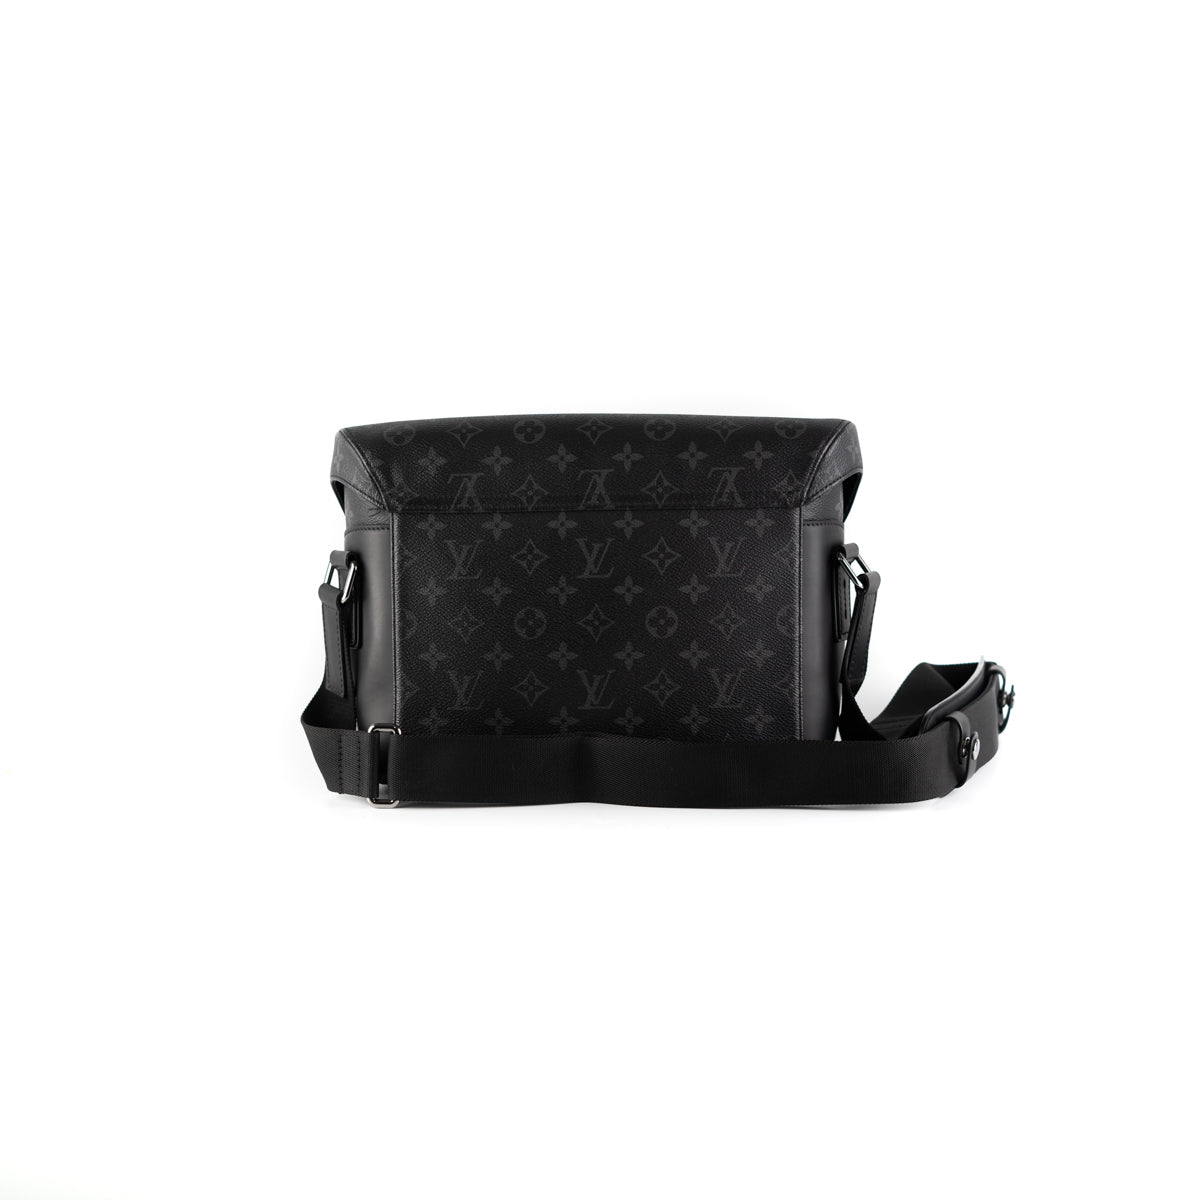 Louis Vuitton Messenger Voyager PM Bag Black - THE PURSE AFFAIR